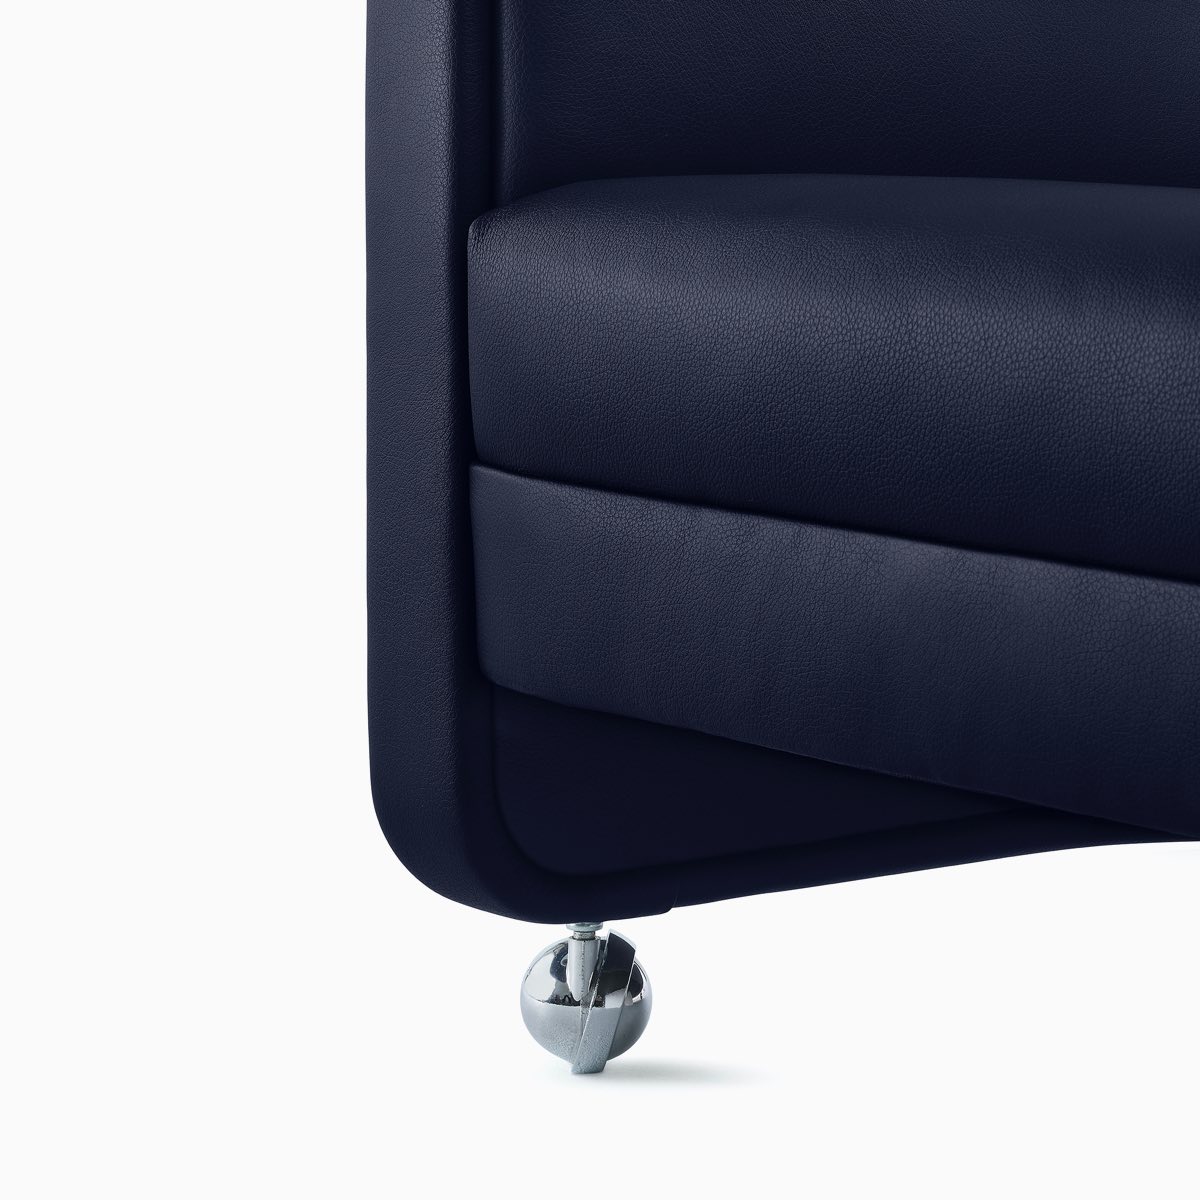 细节特写：搭配Tenera宝蓝色软垫的U-系列休闲椅上的轮脚。